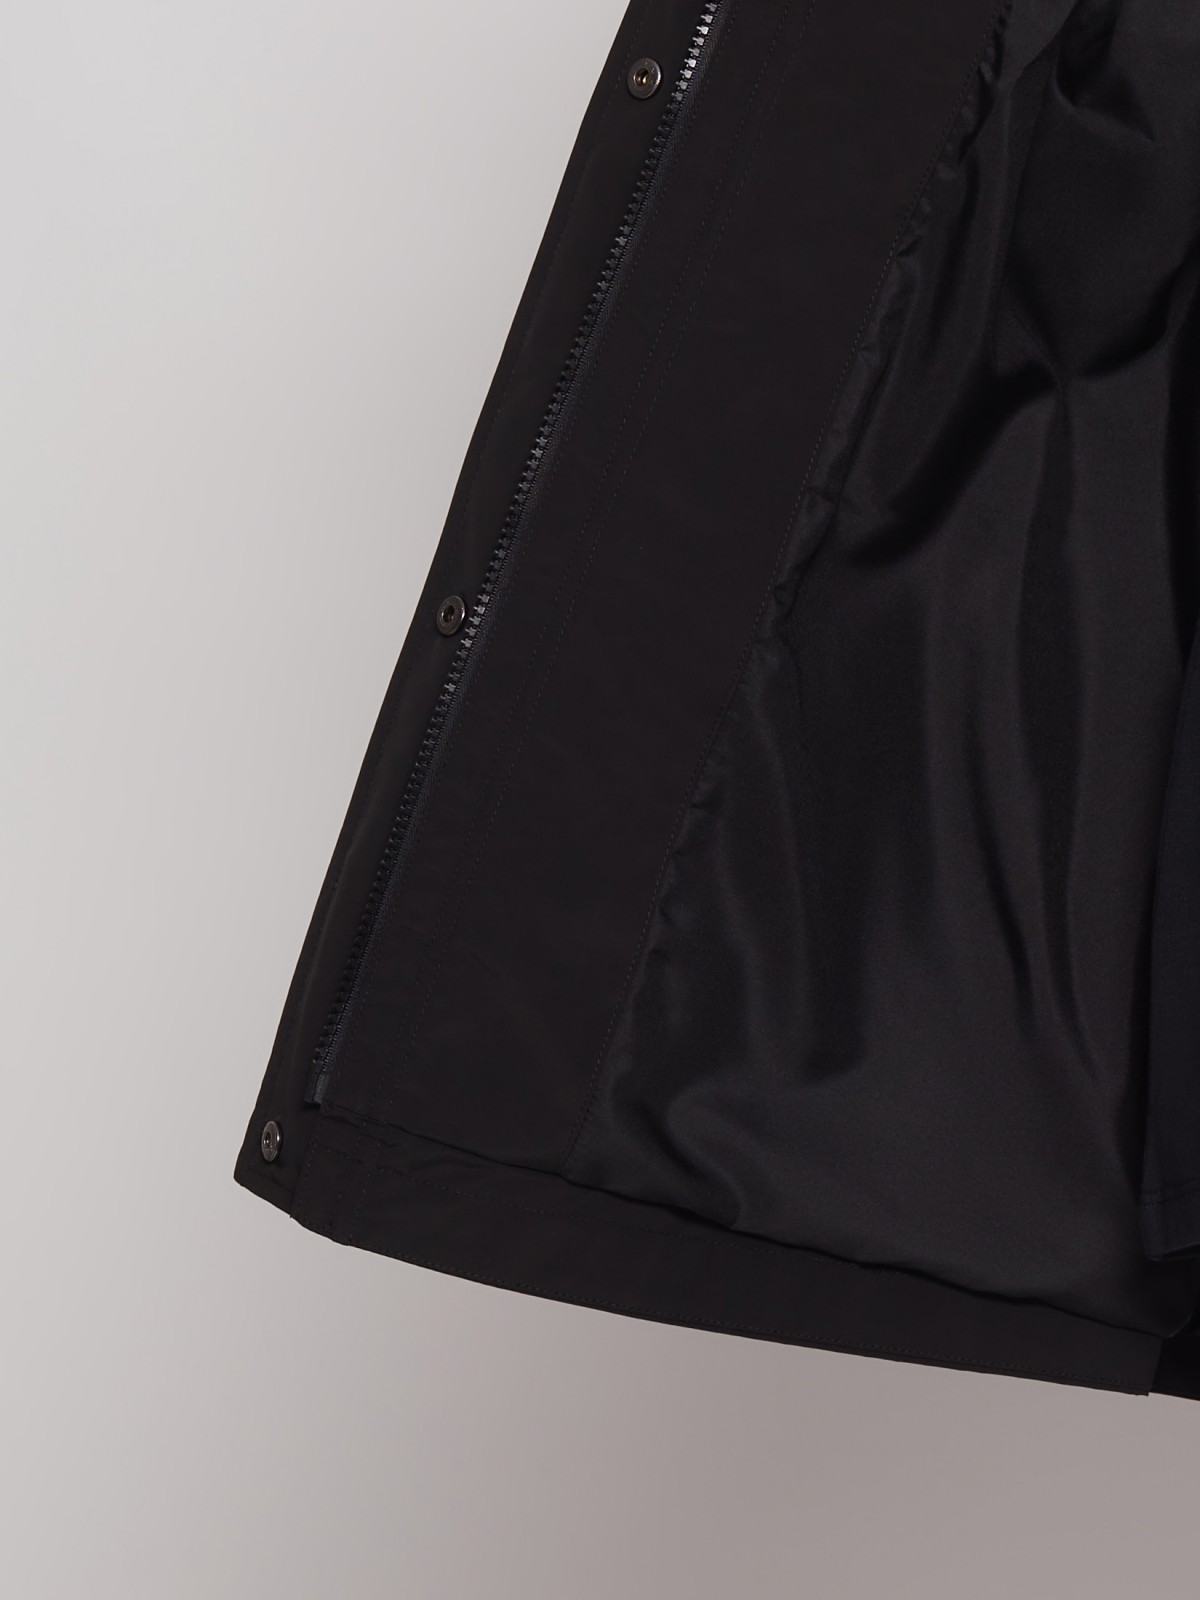 Куртка-парка с капюшоном zolla 022215712164, цвет черный, размер S - фото 3